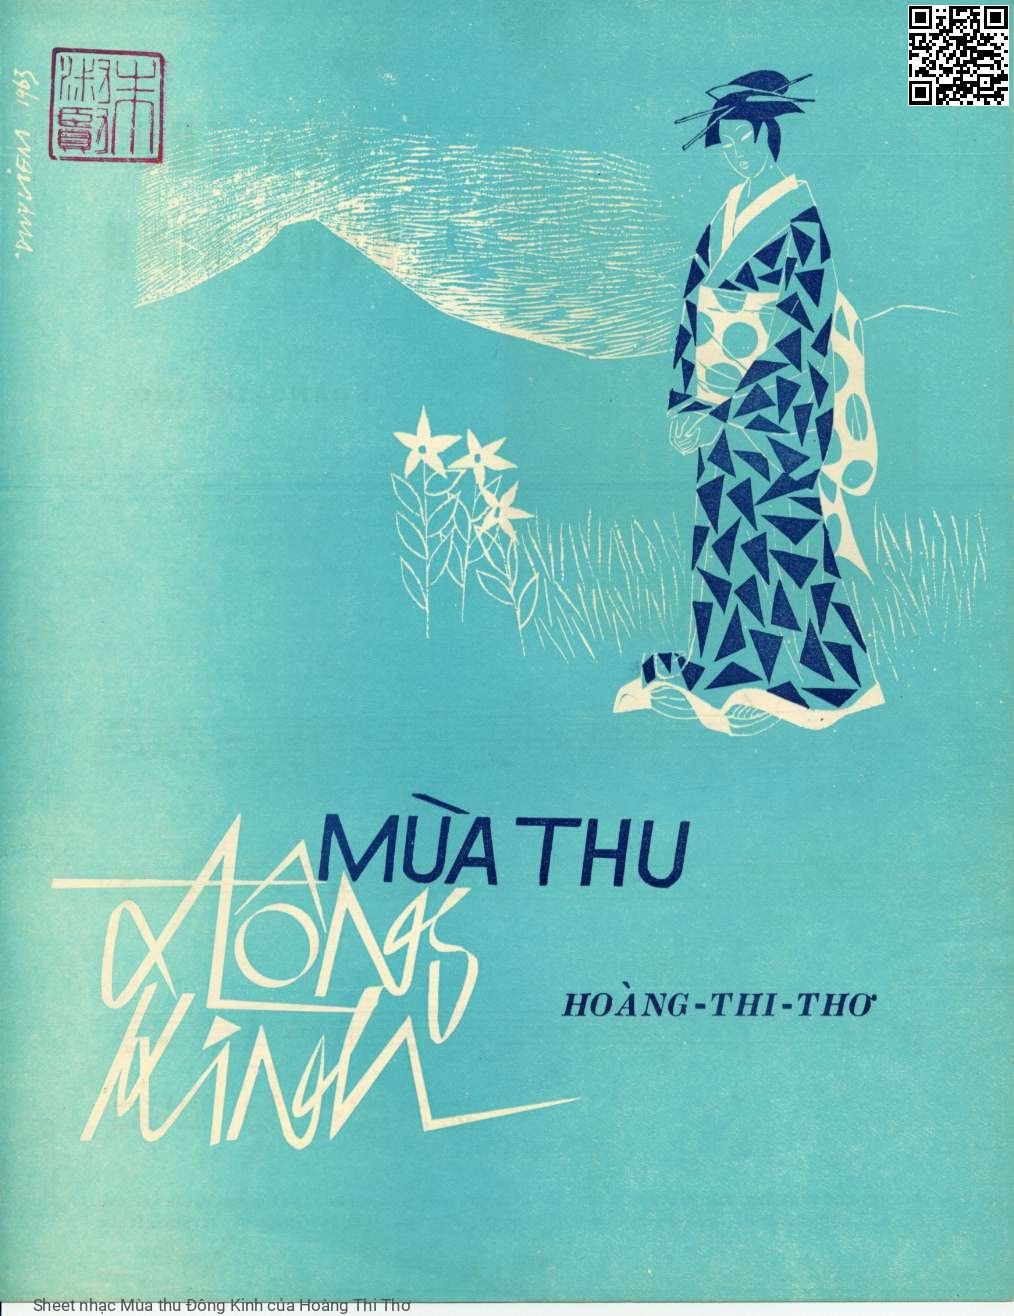 Sheet nhạc Mùa thu Đông Kinh - Hoàng Thi Thơ